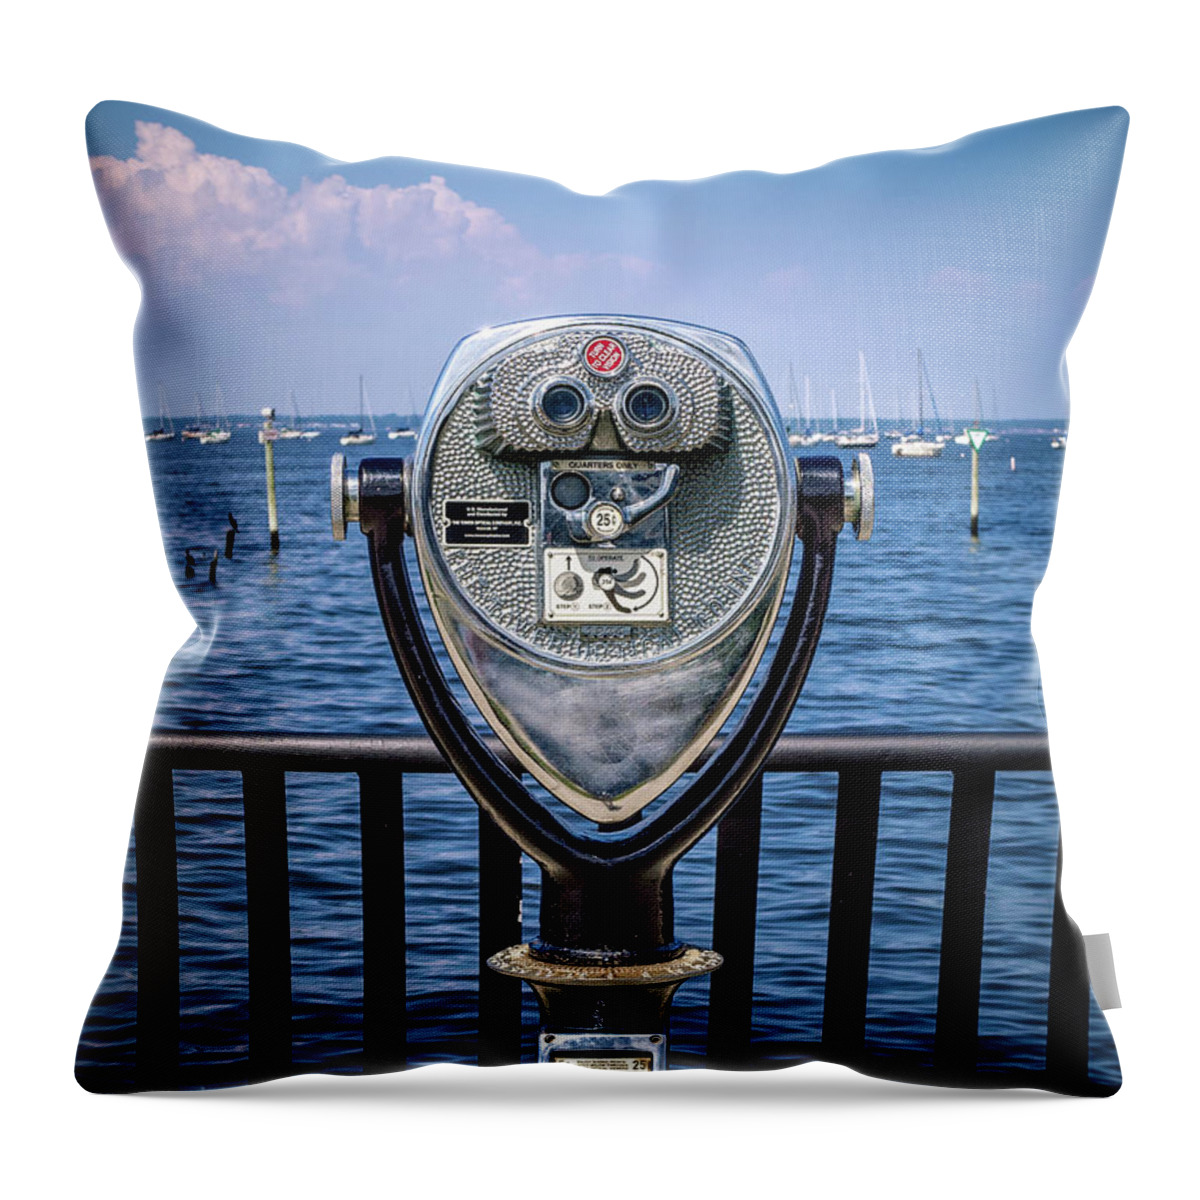 Keyport Throw Pillow featuring the photograph Binocular Viewer by Steve Stanger